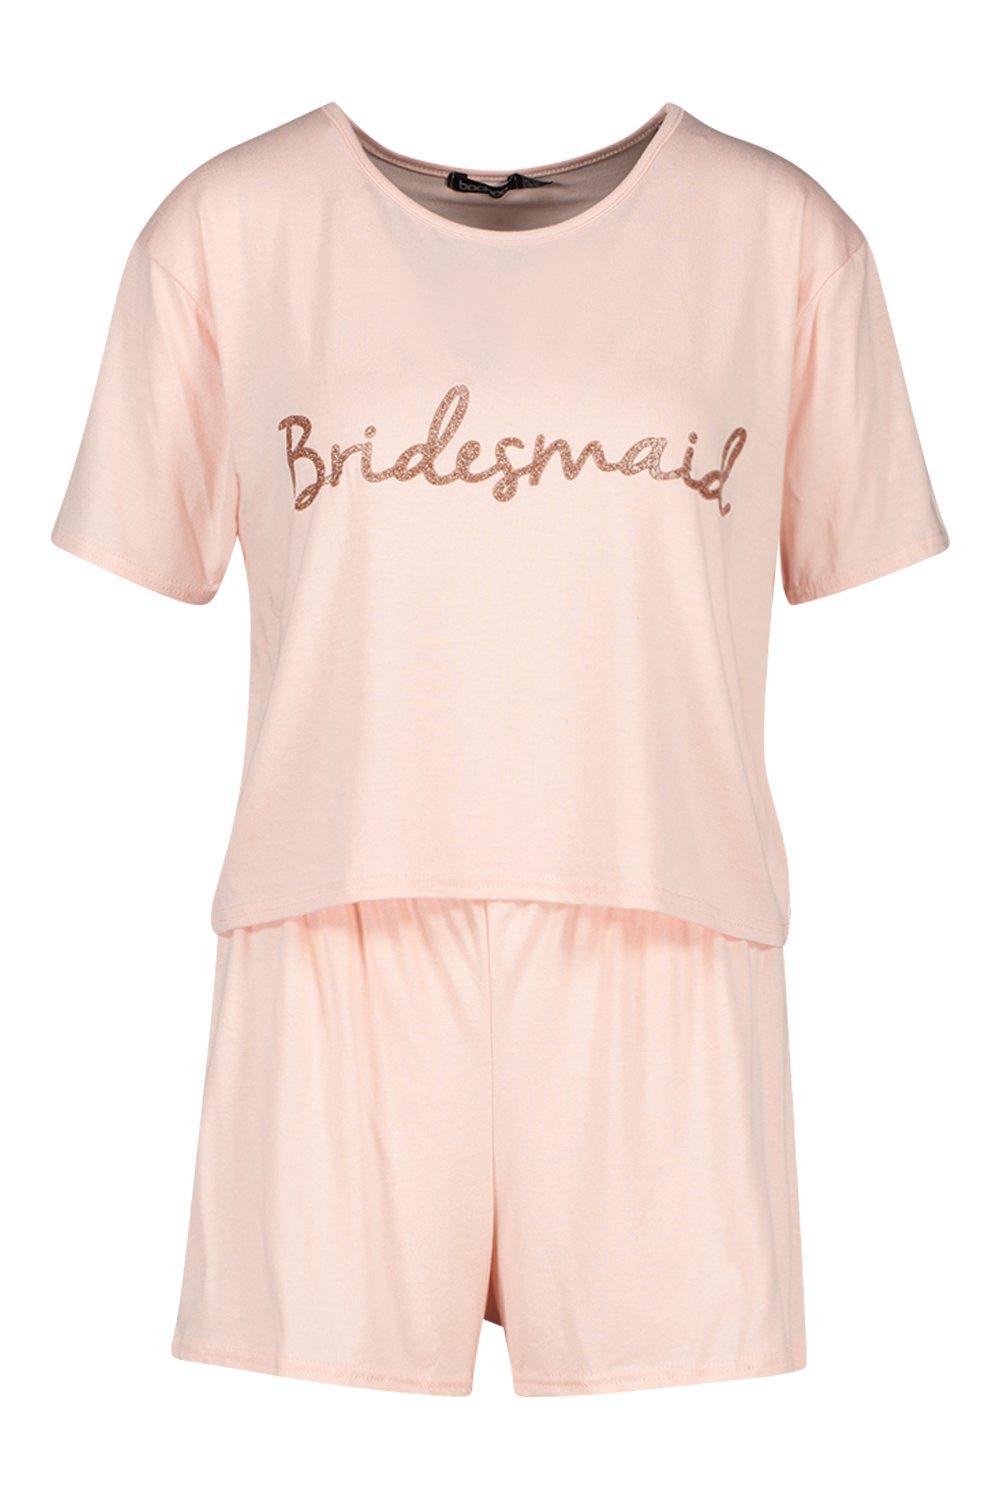 rose gold bridesmaid shirts